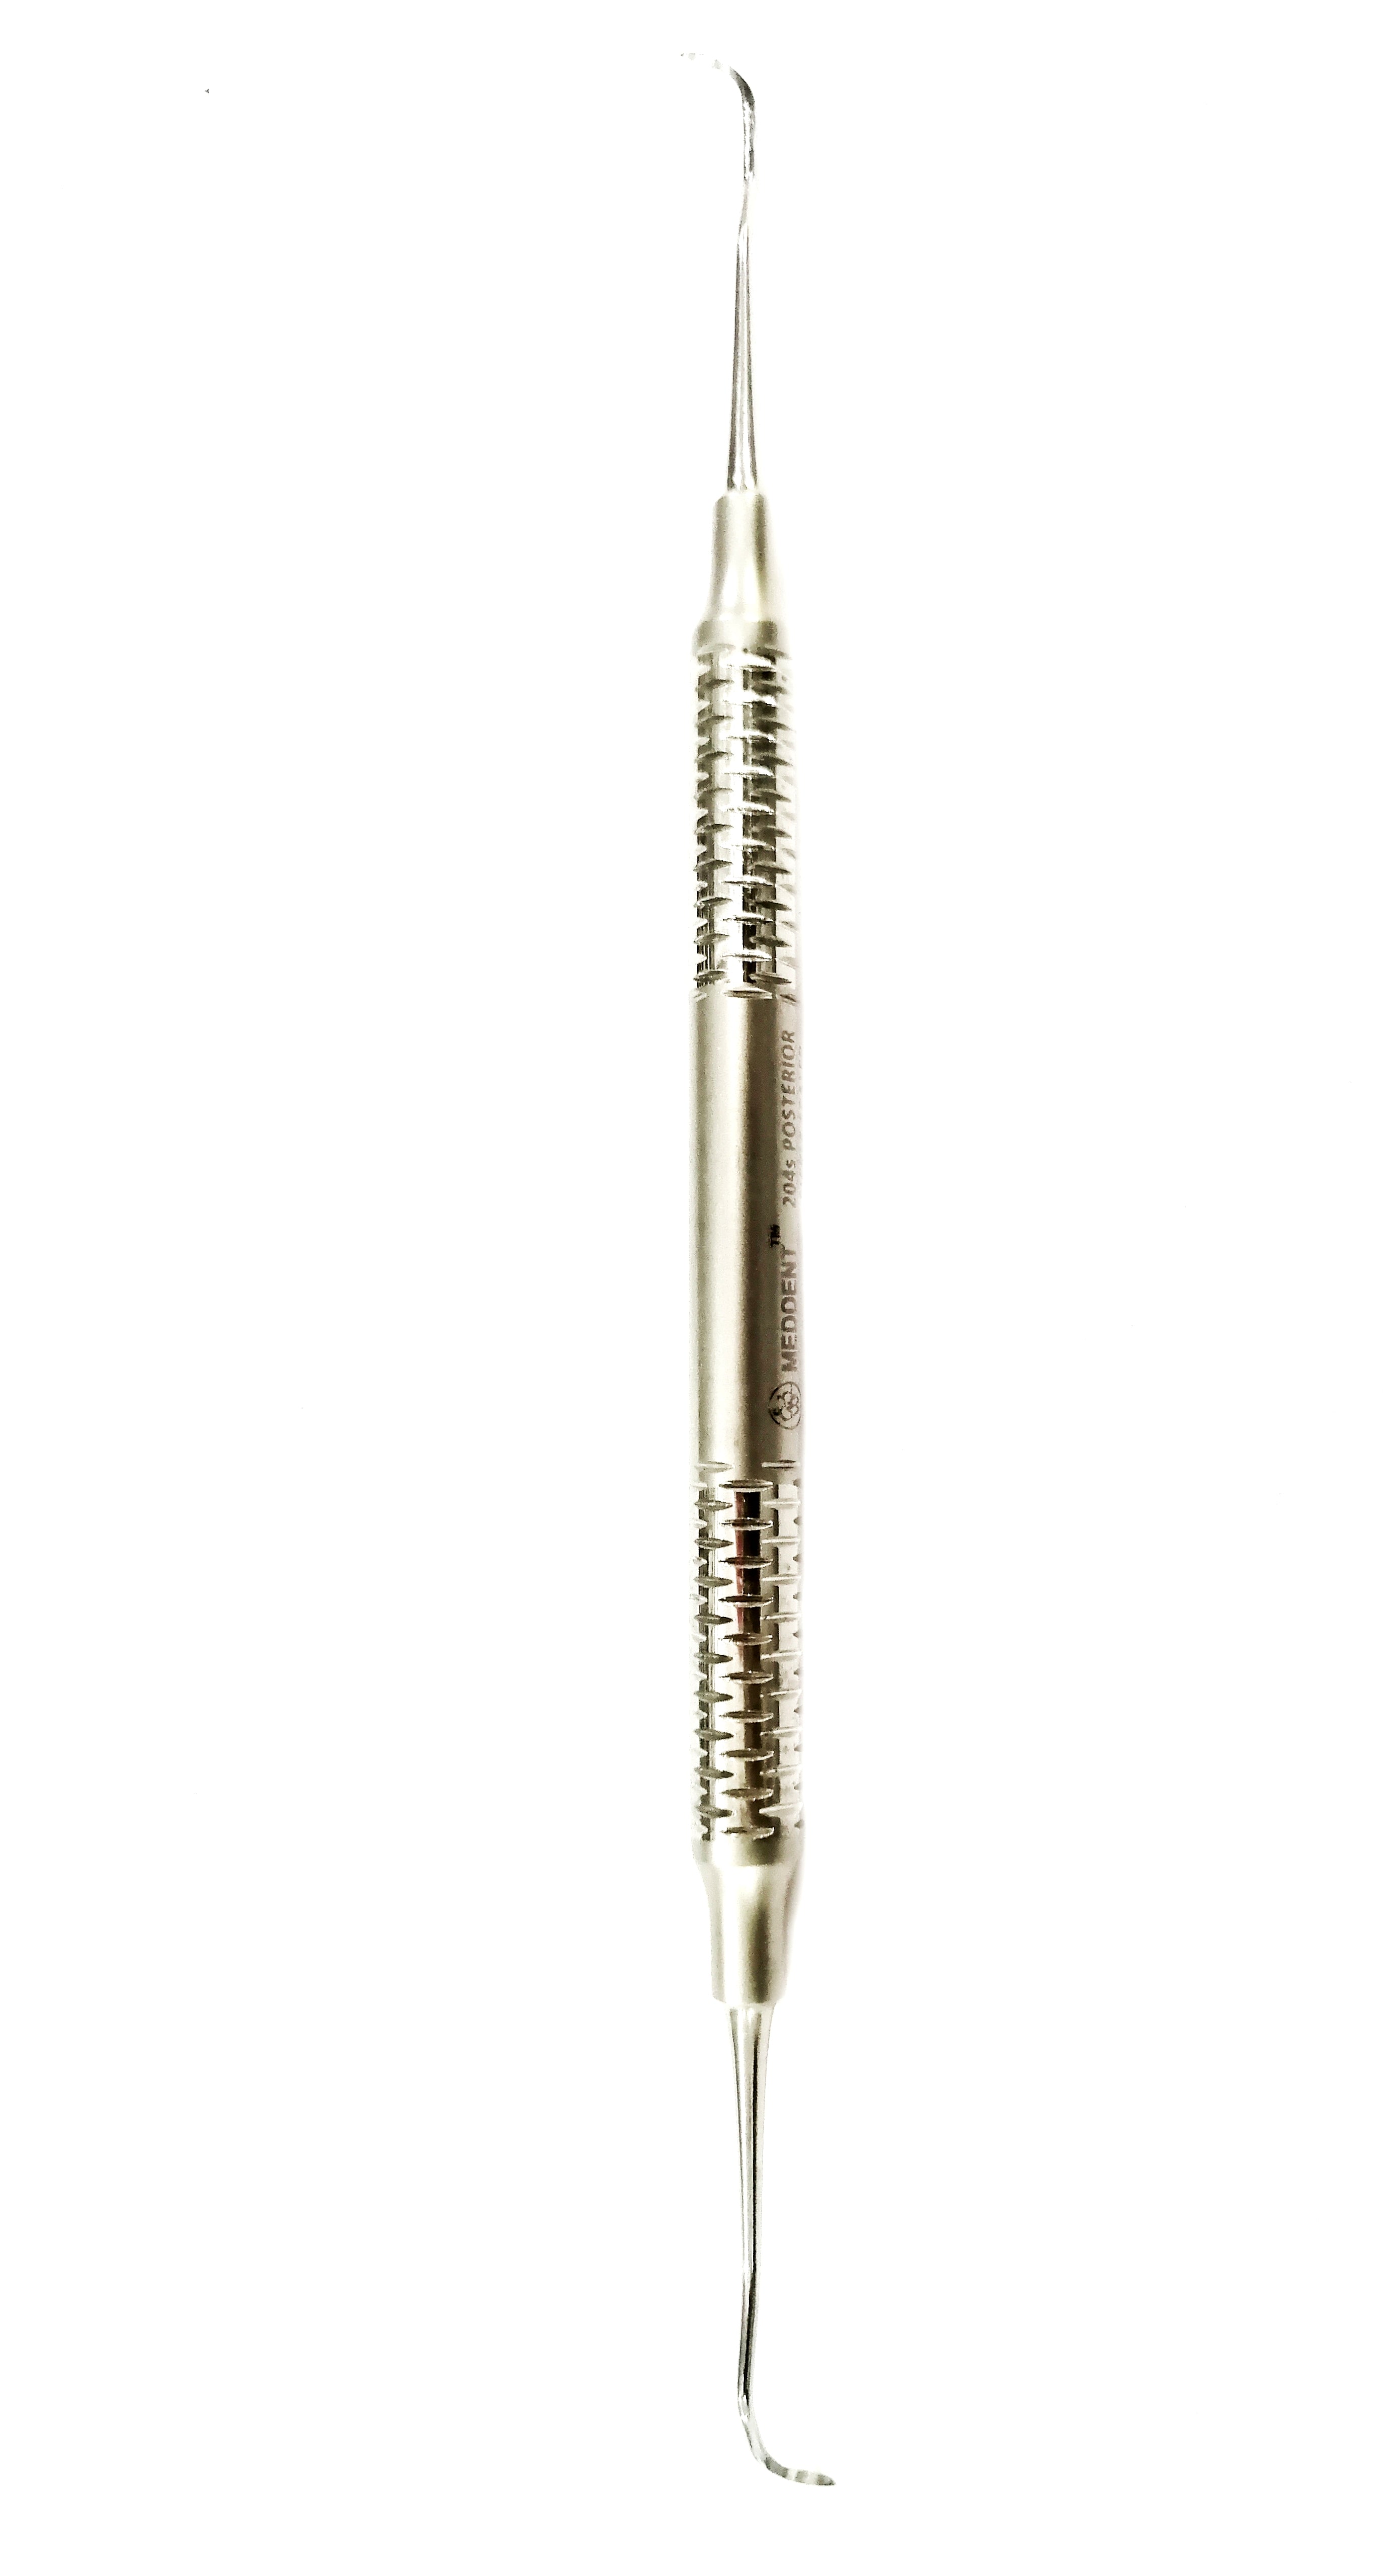 Meddent Stainless Steel Posterior Scaler #204s dental Instrument